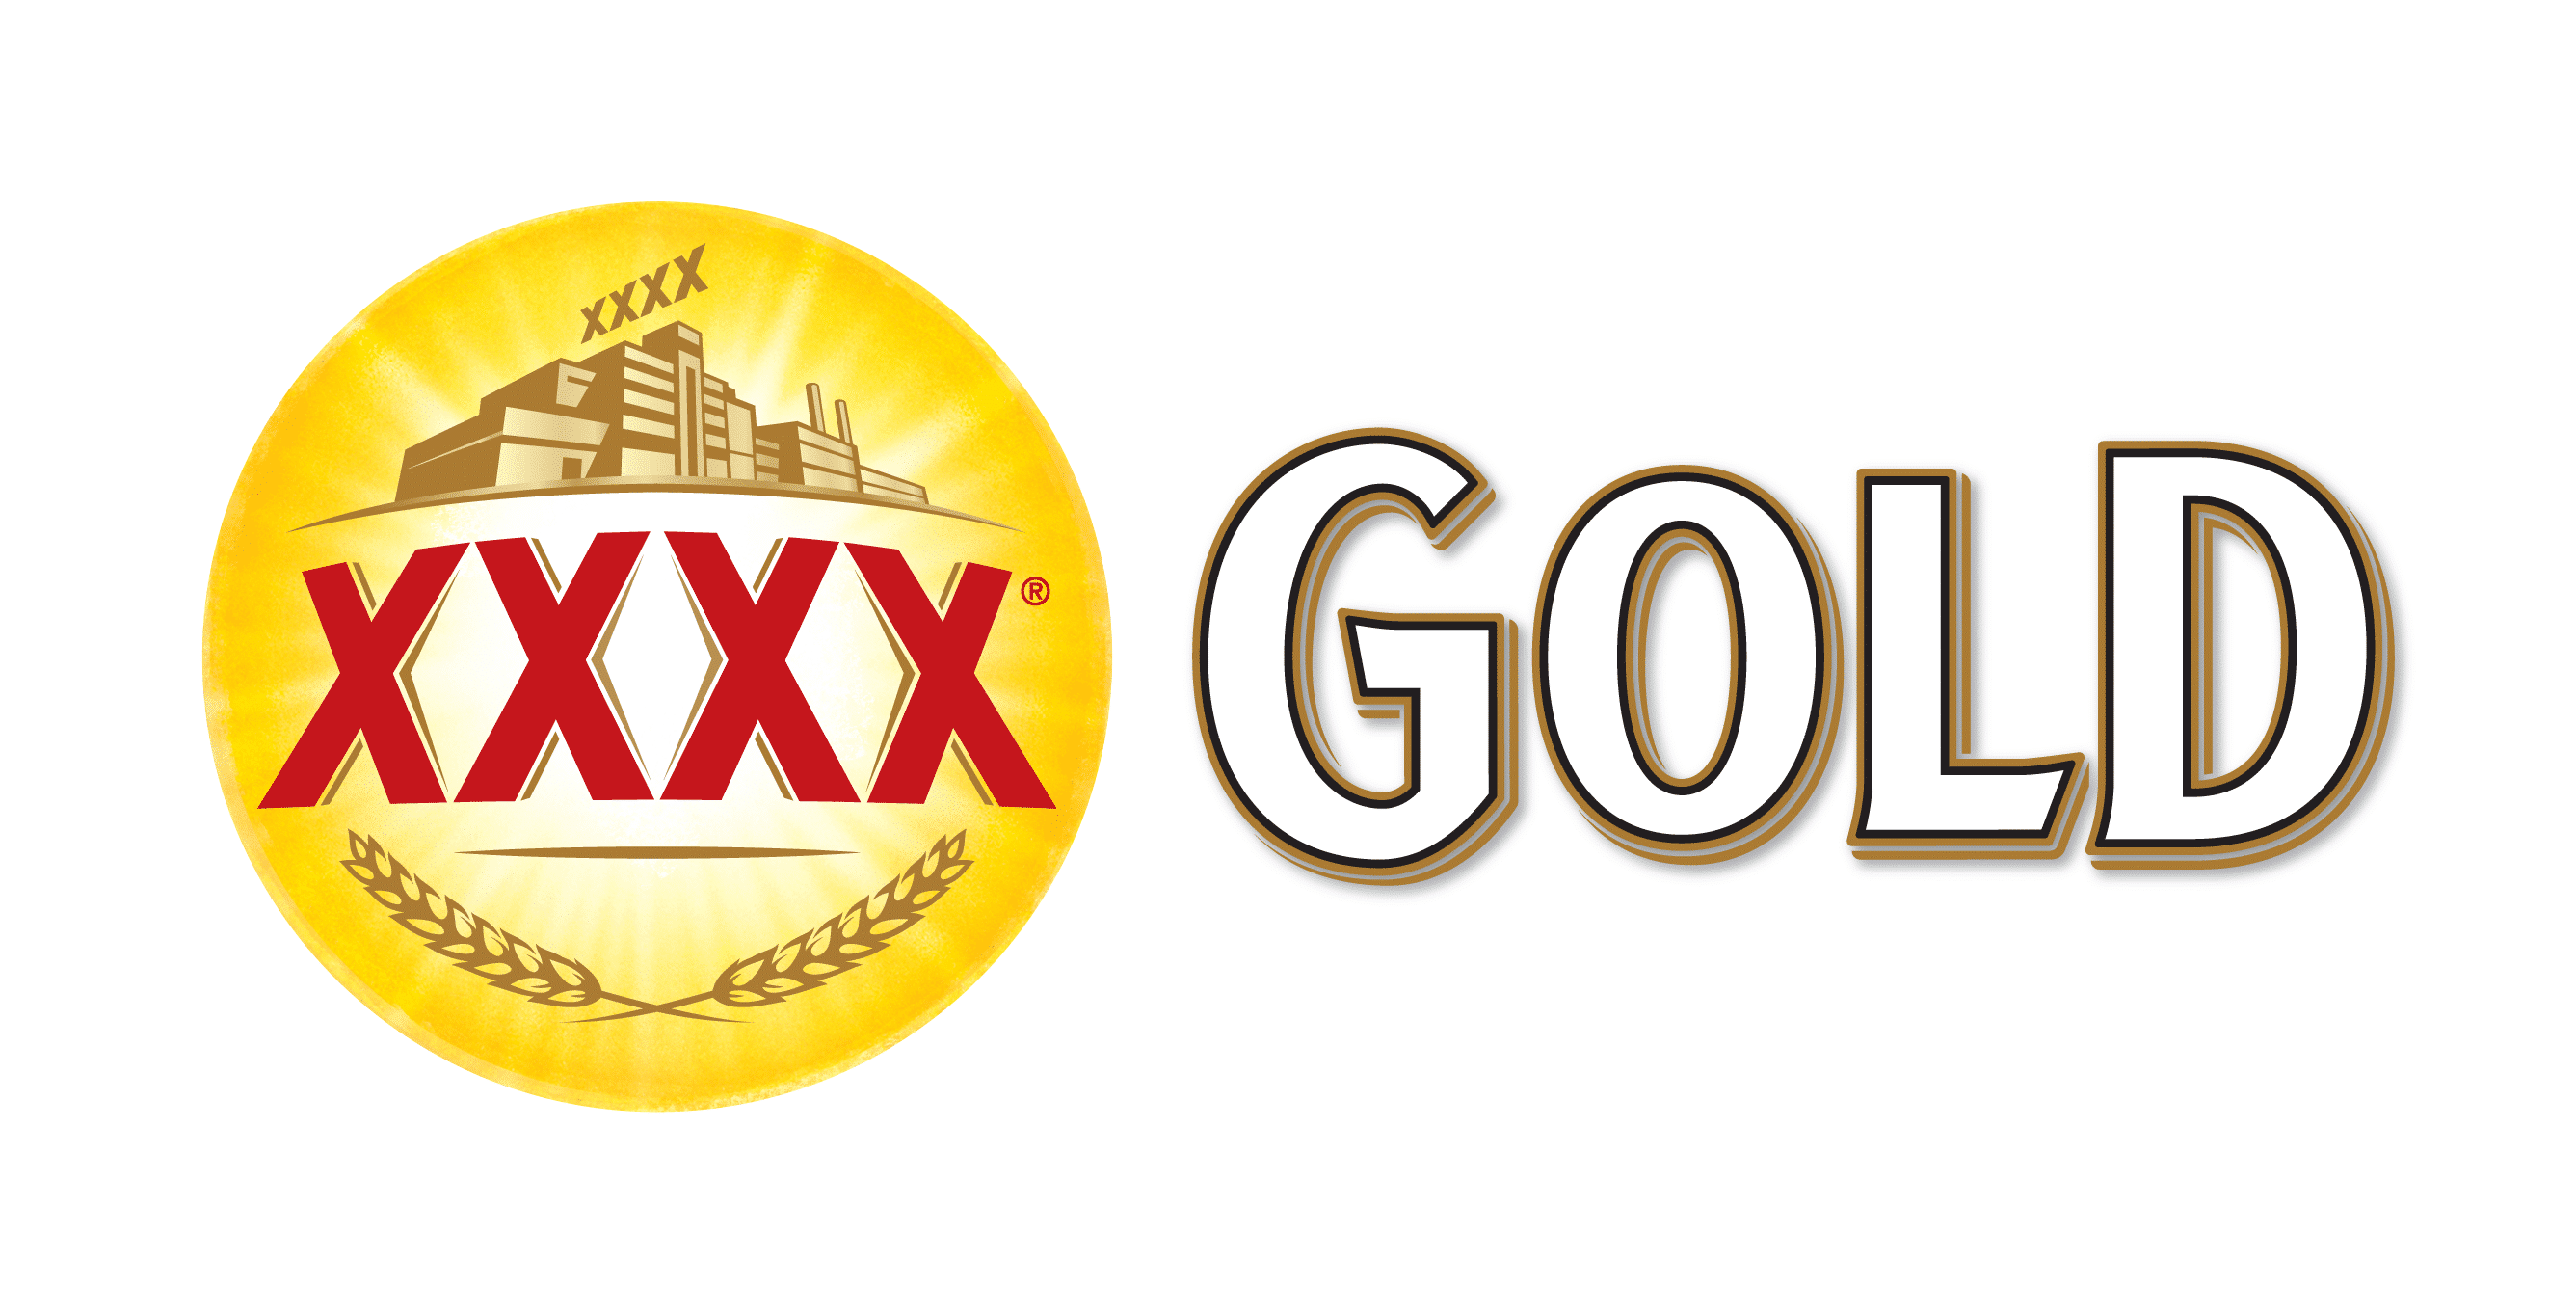 Xxx Gold